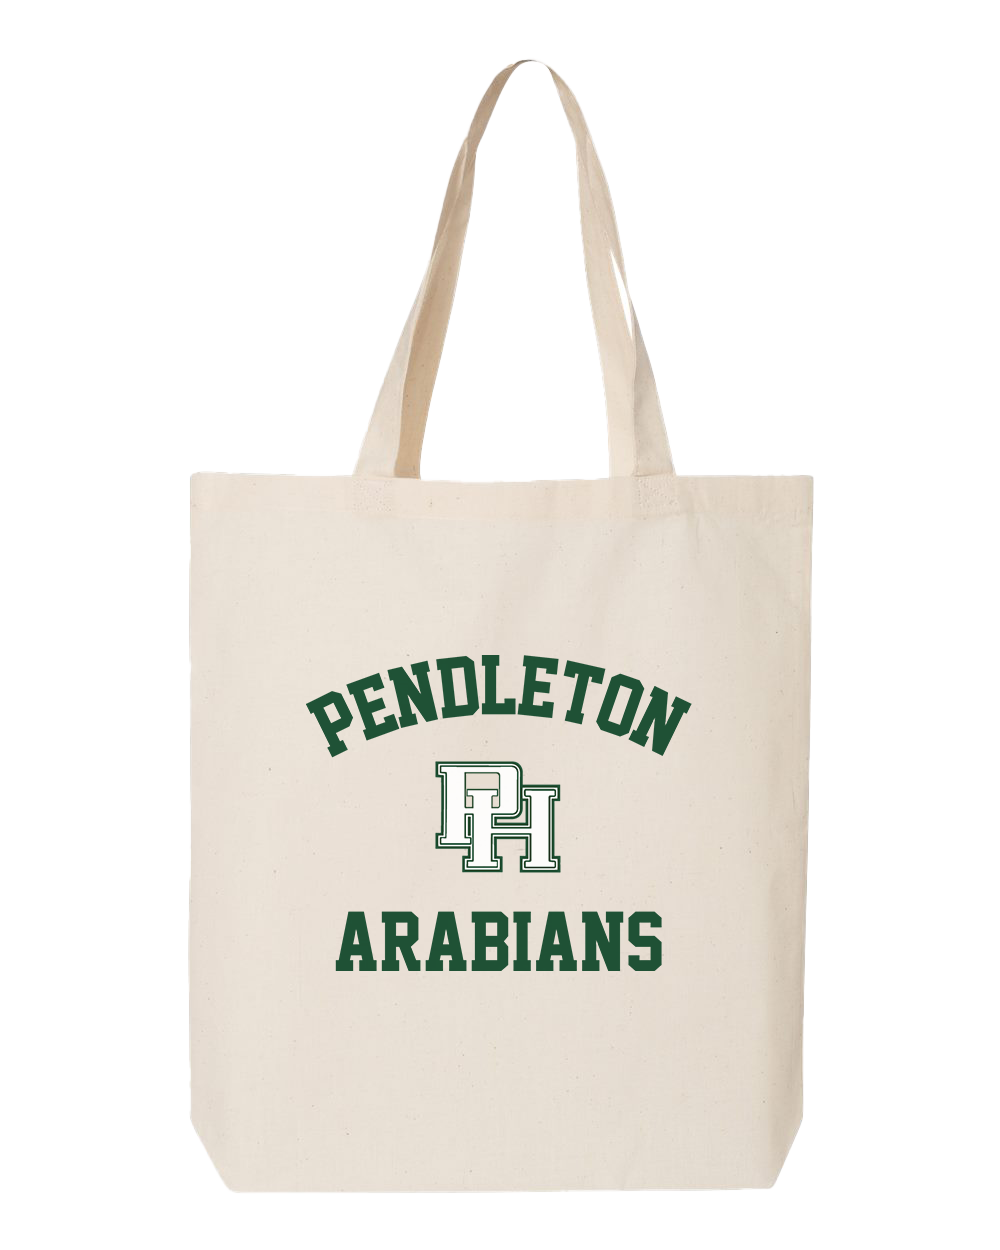 Pendleton Arabians Tote Bag - Natural